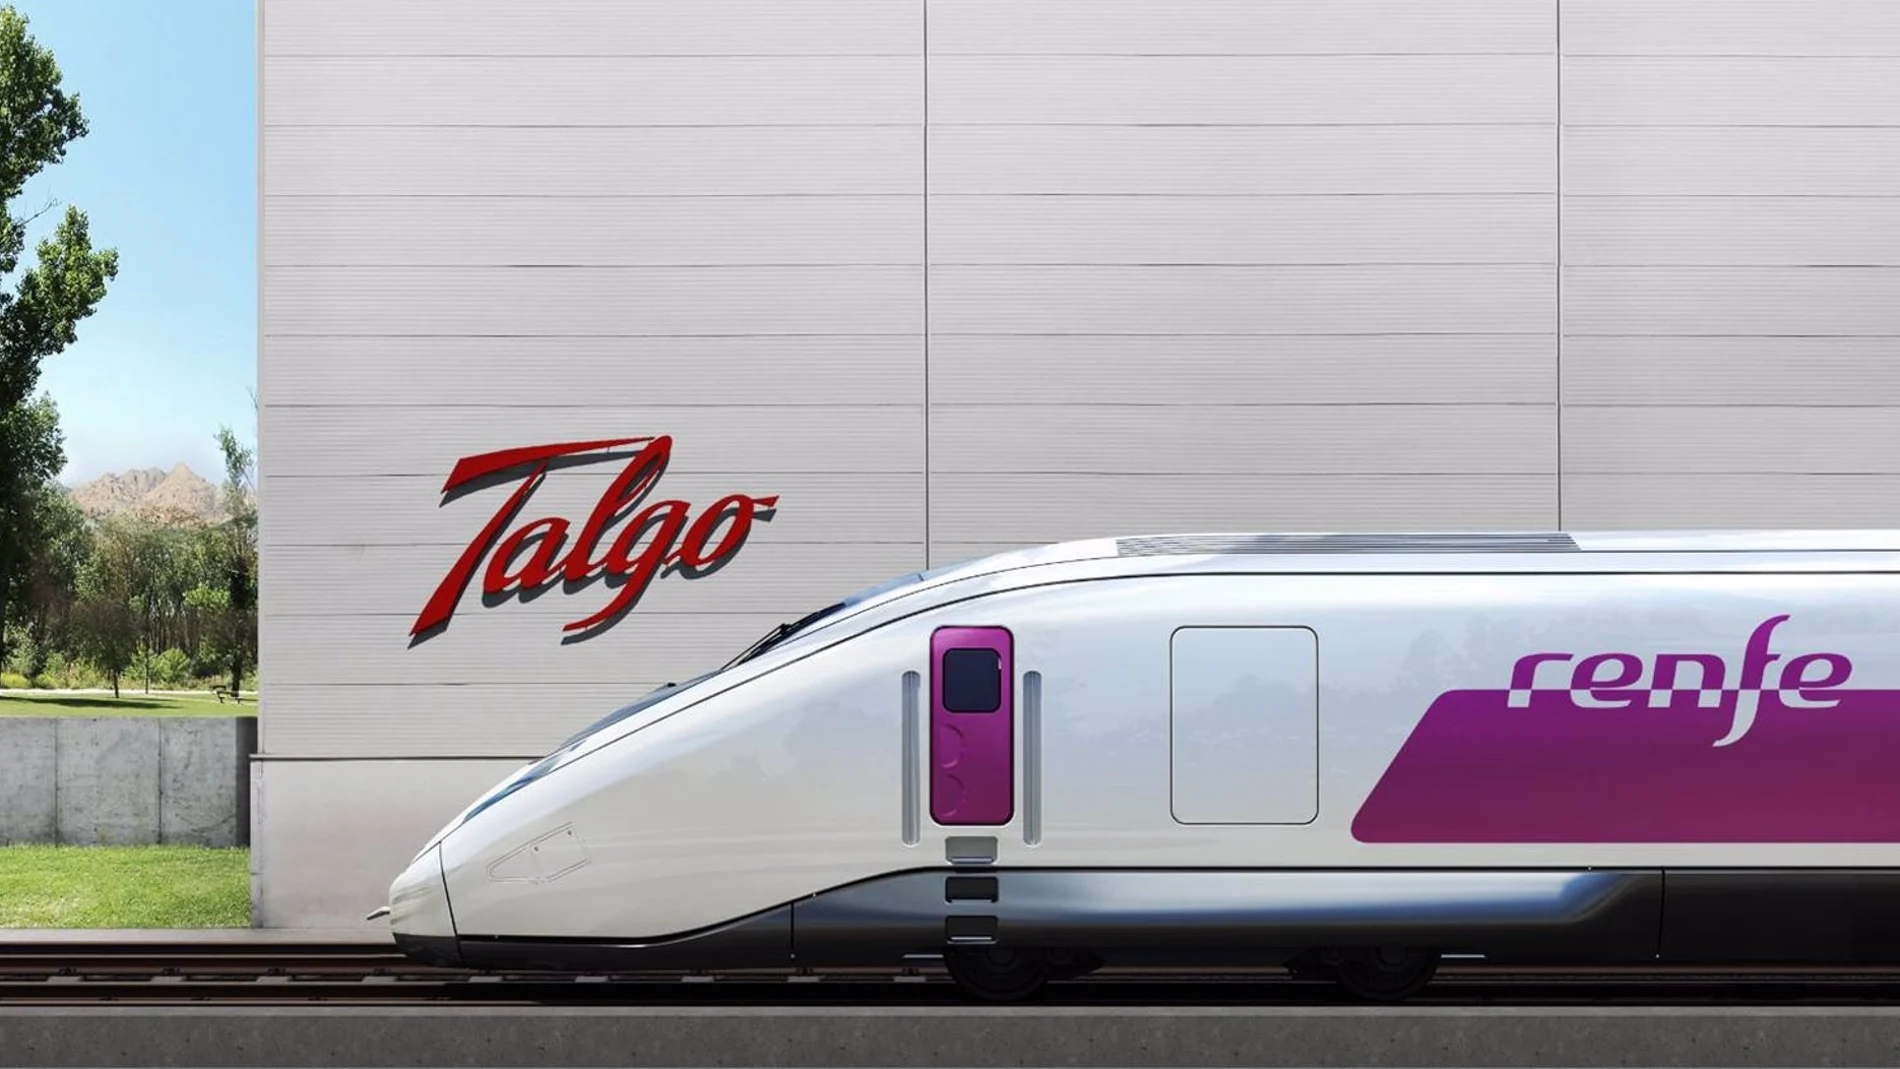 Economía.- Renfe recibe al fin los primeros diez trenes Avril de Talgo para Galicia y Asturias tras años de espera